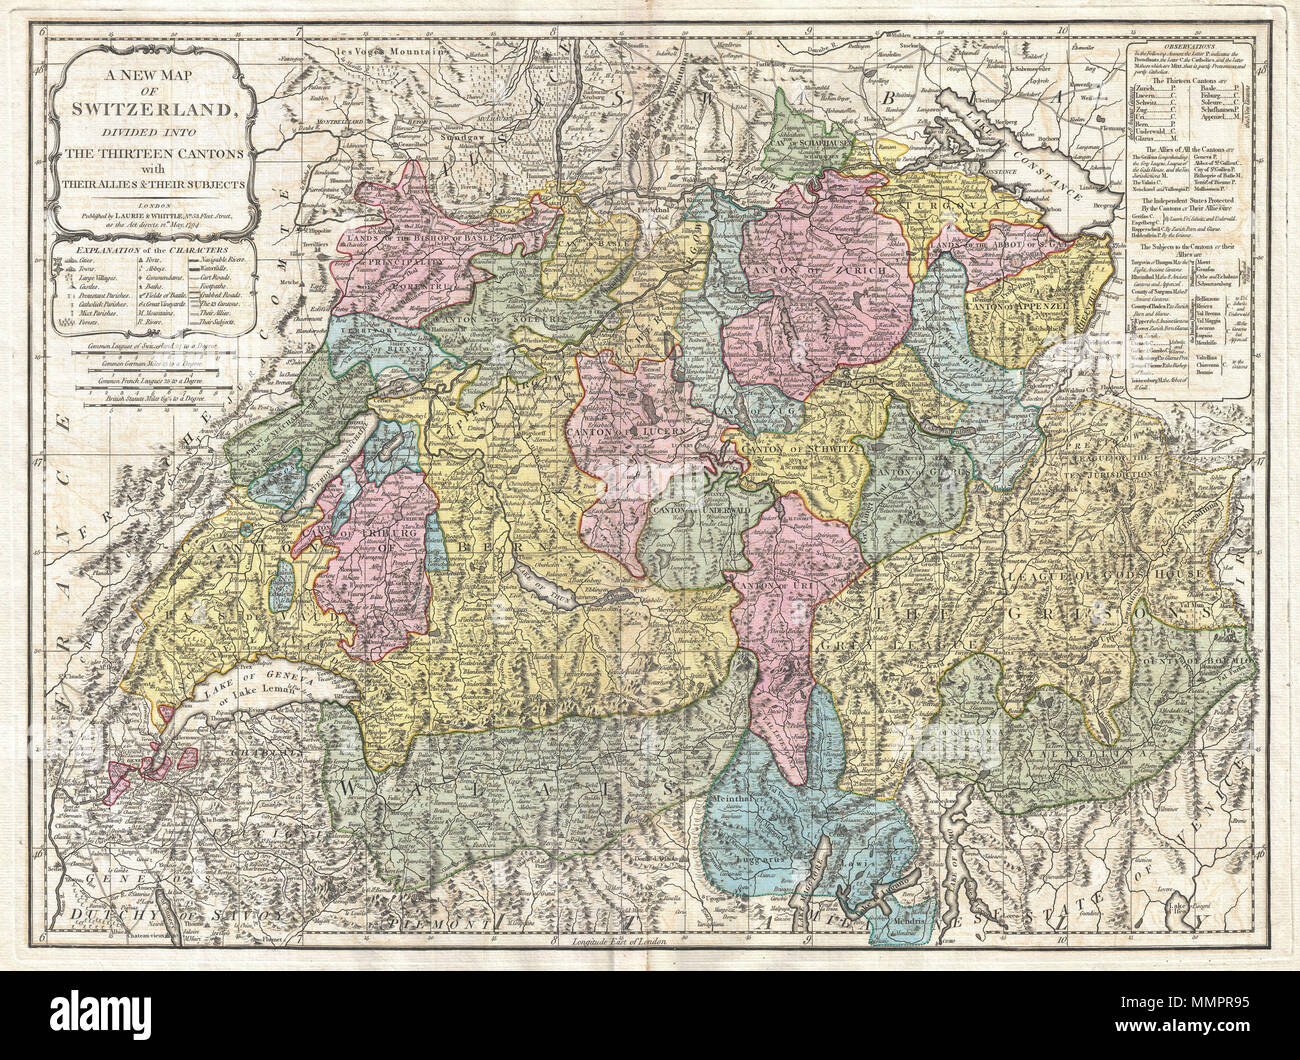 Englisch: Eine außerordentliche 1794 Karte der Schweiz. Deckt das gesamte  Land in außergewöhnlichen Detail sowohl topographische und politische  Informationen bietet. Die Farbe je nach Kanton codiert. Mit seiner  einzigartigen Mischung aus